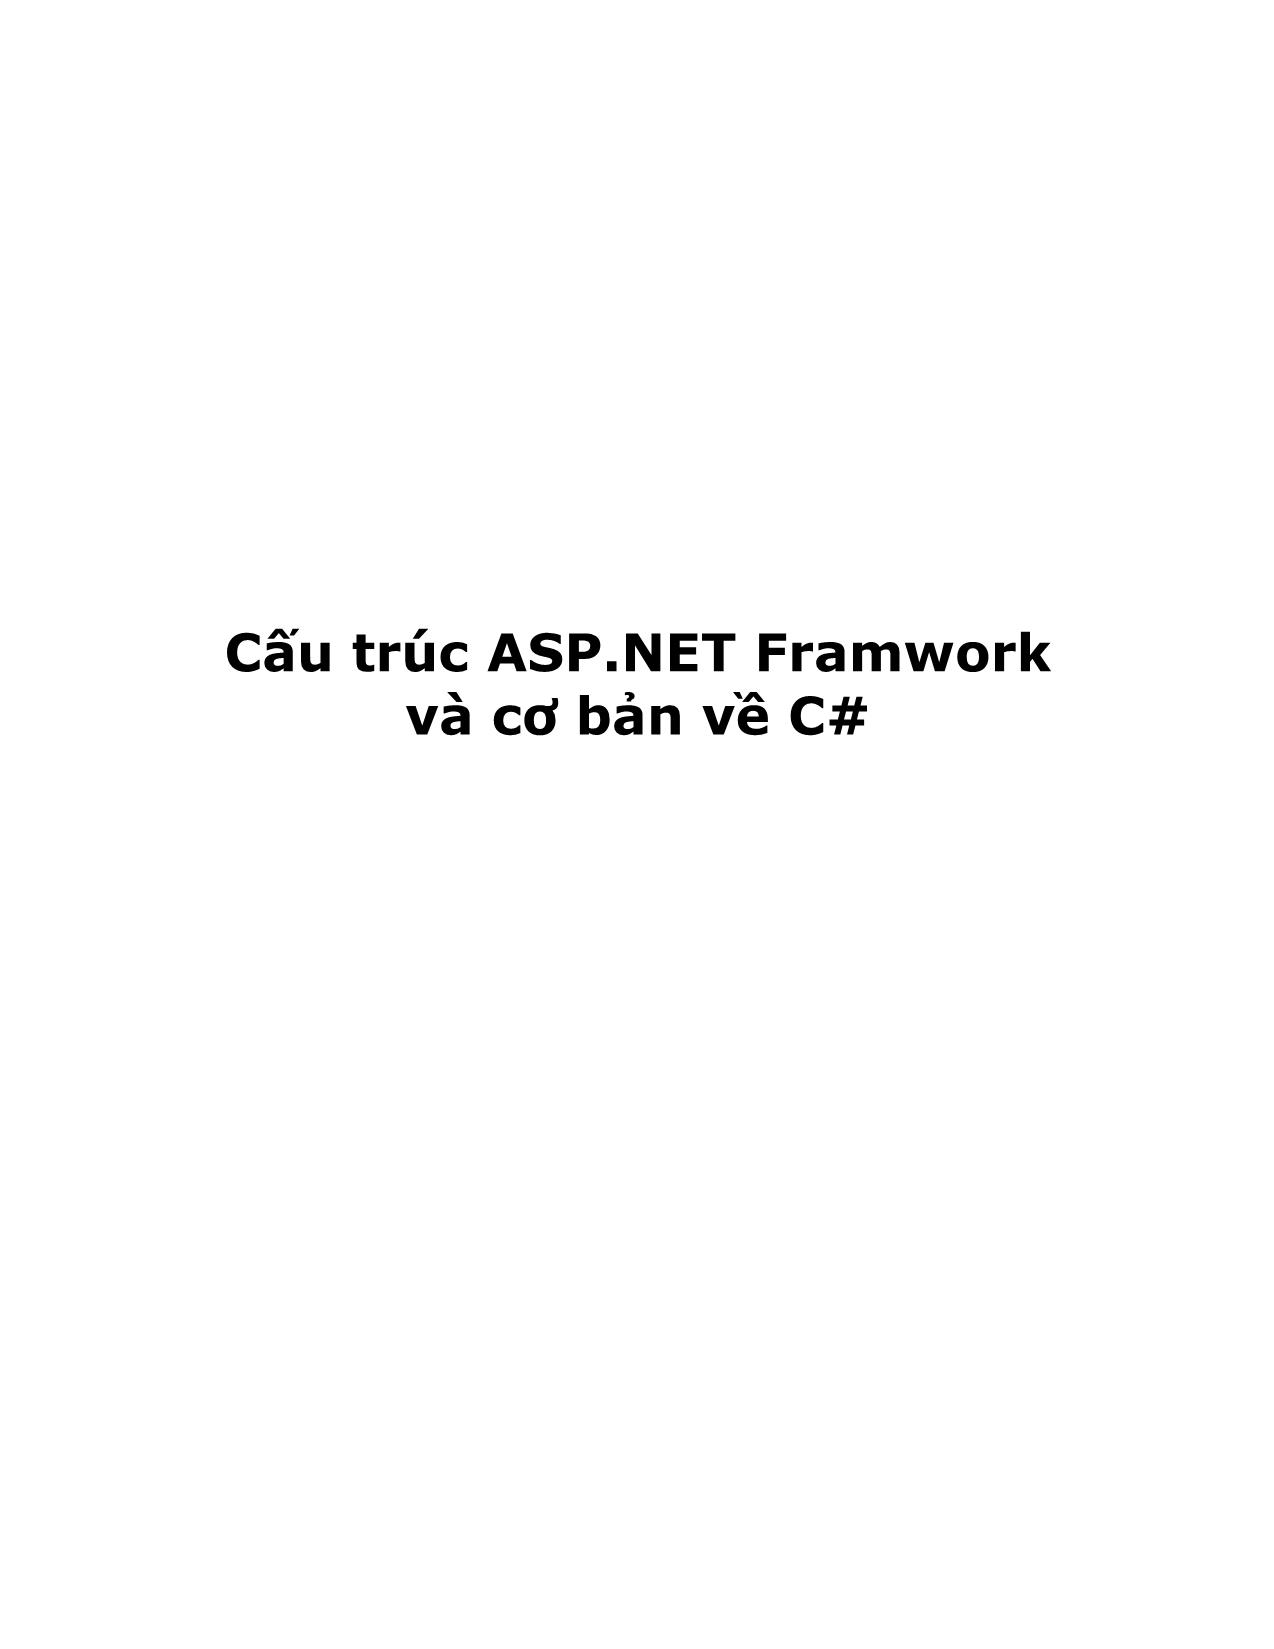 Cấu trúc ASP.NET Framwork và cơ bản về C# trang 1